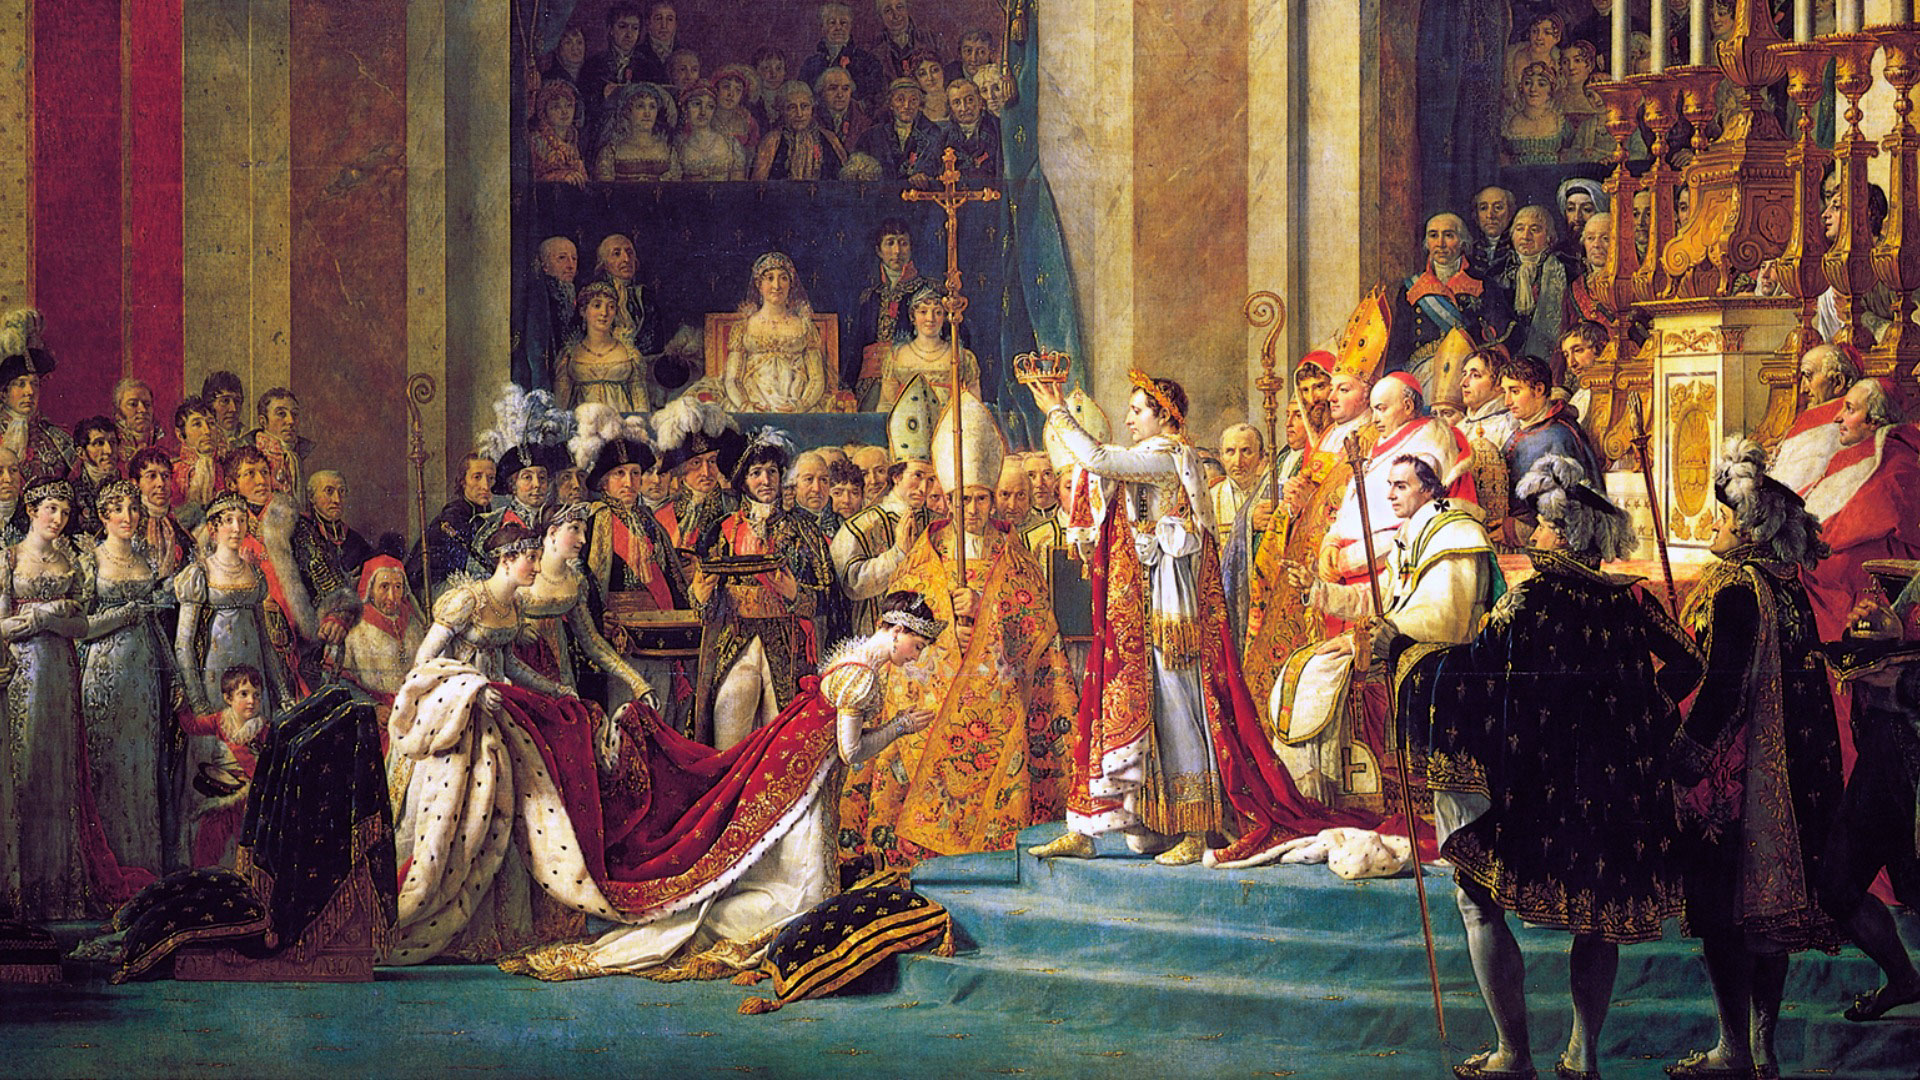 Les présents de Napoléon au pape